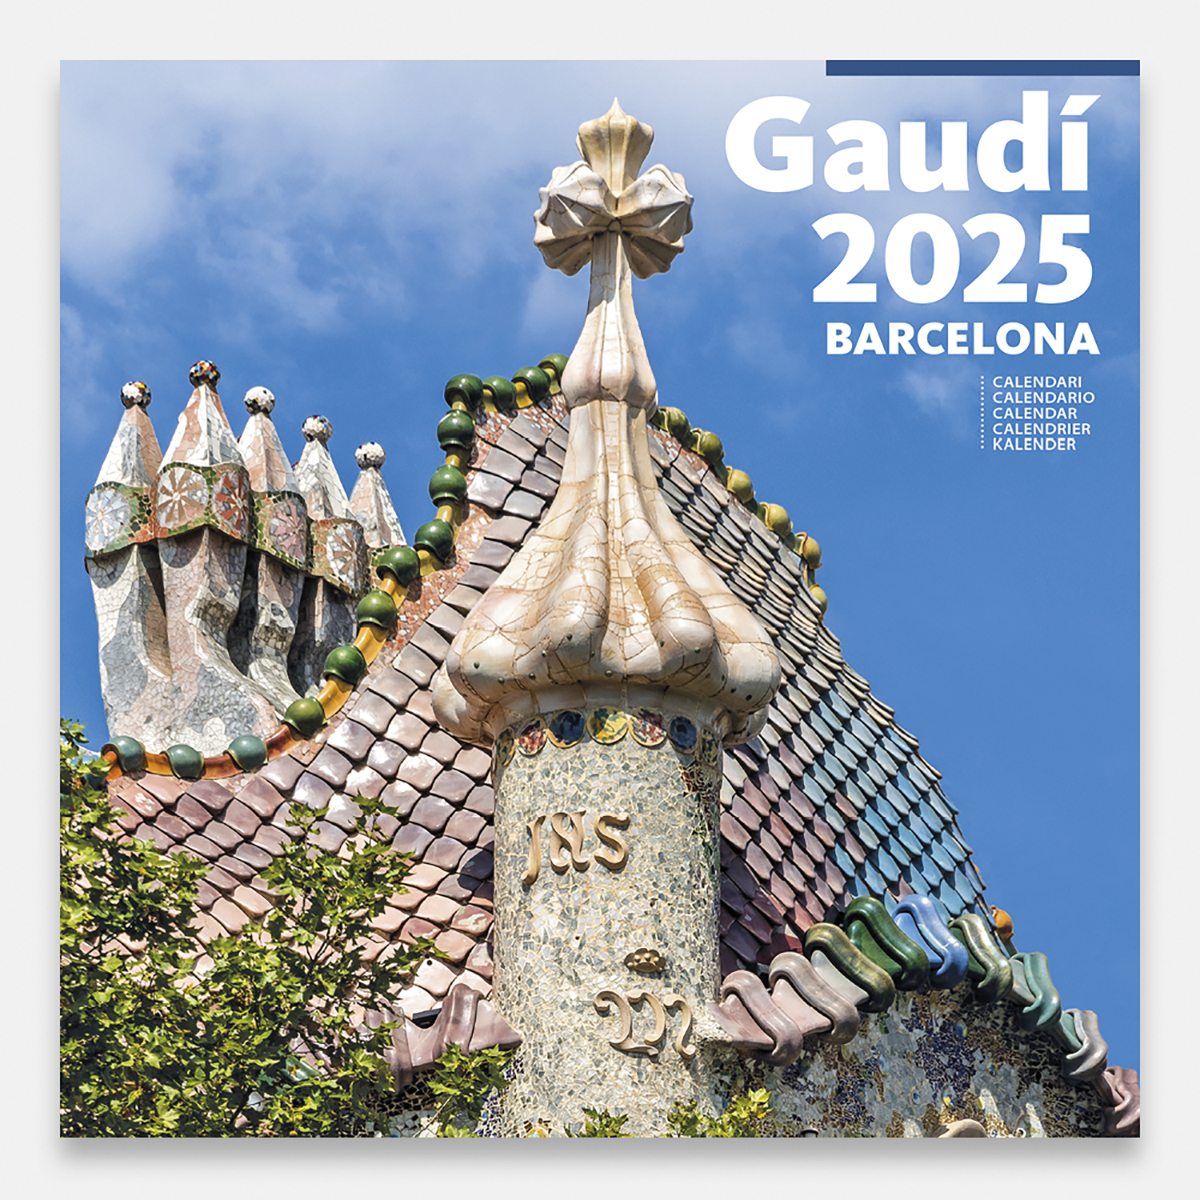 Calendar 2025 Gaudí-1 A (Batlló) 25gg1 a calendario pared 2025 gaudi batllo